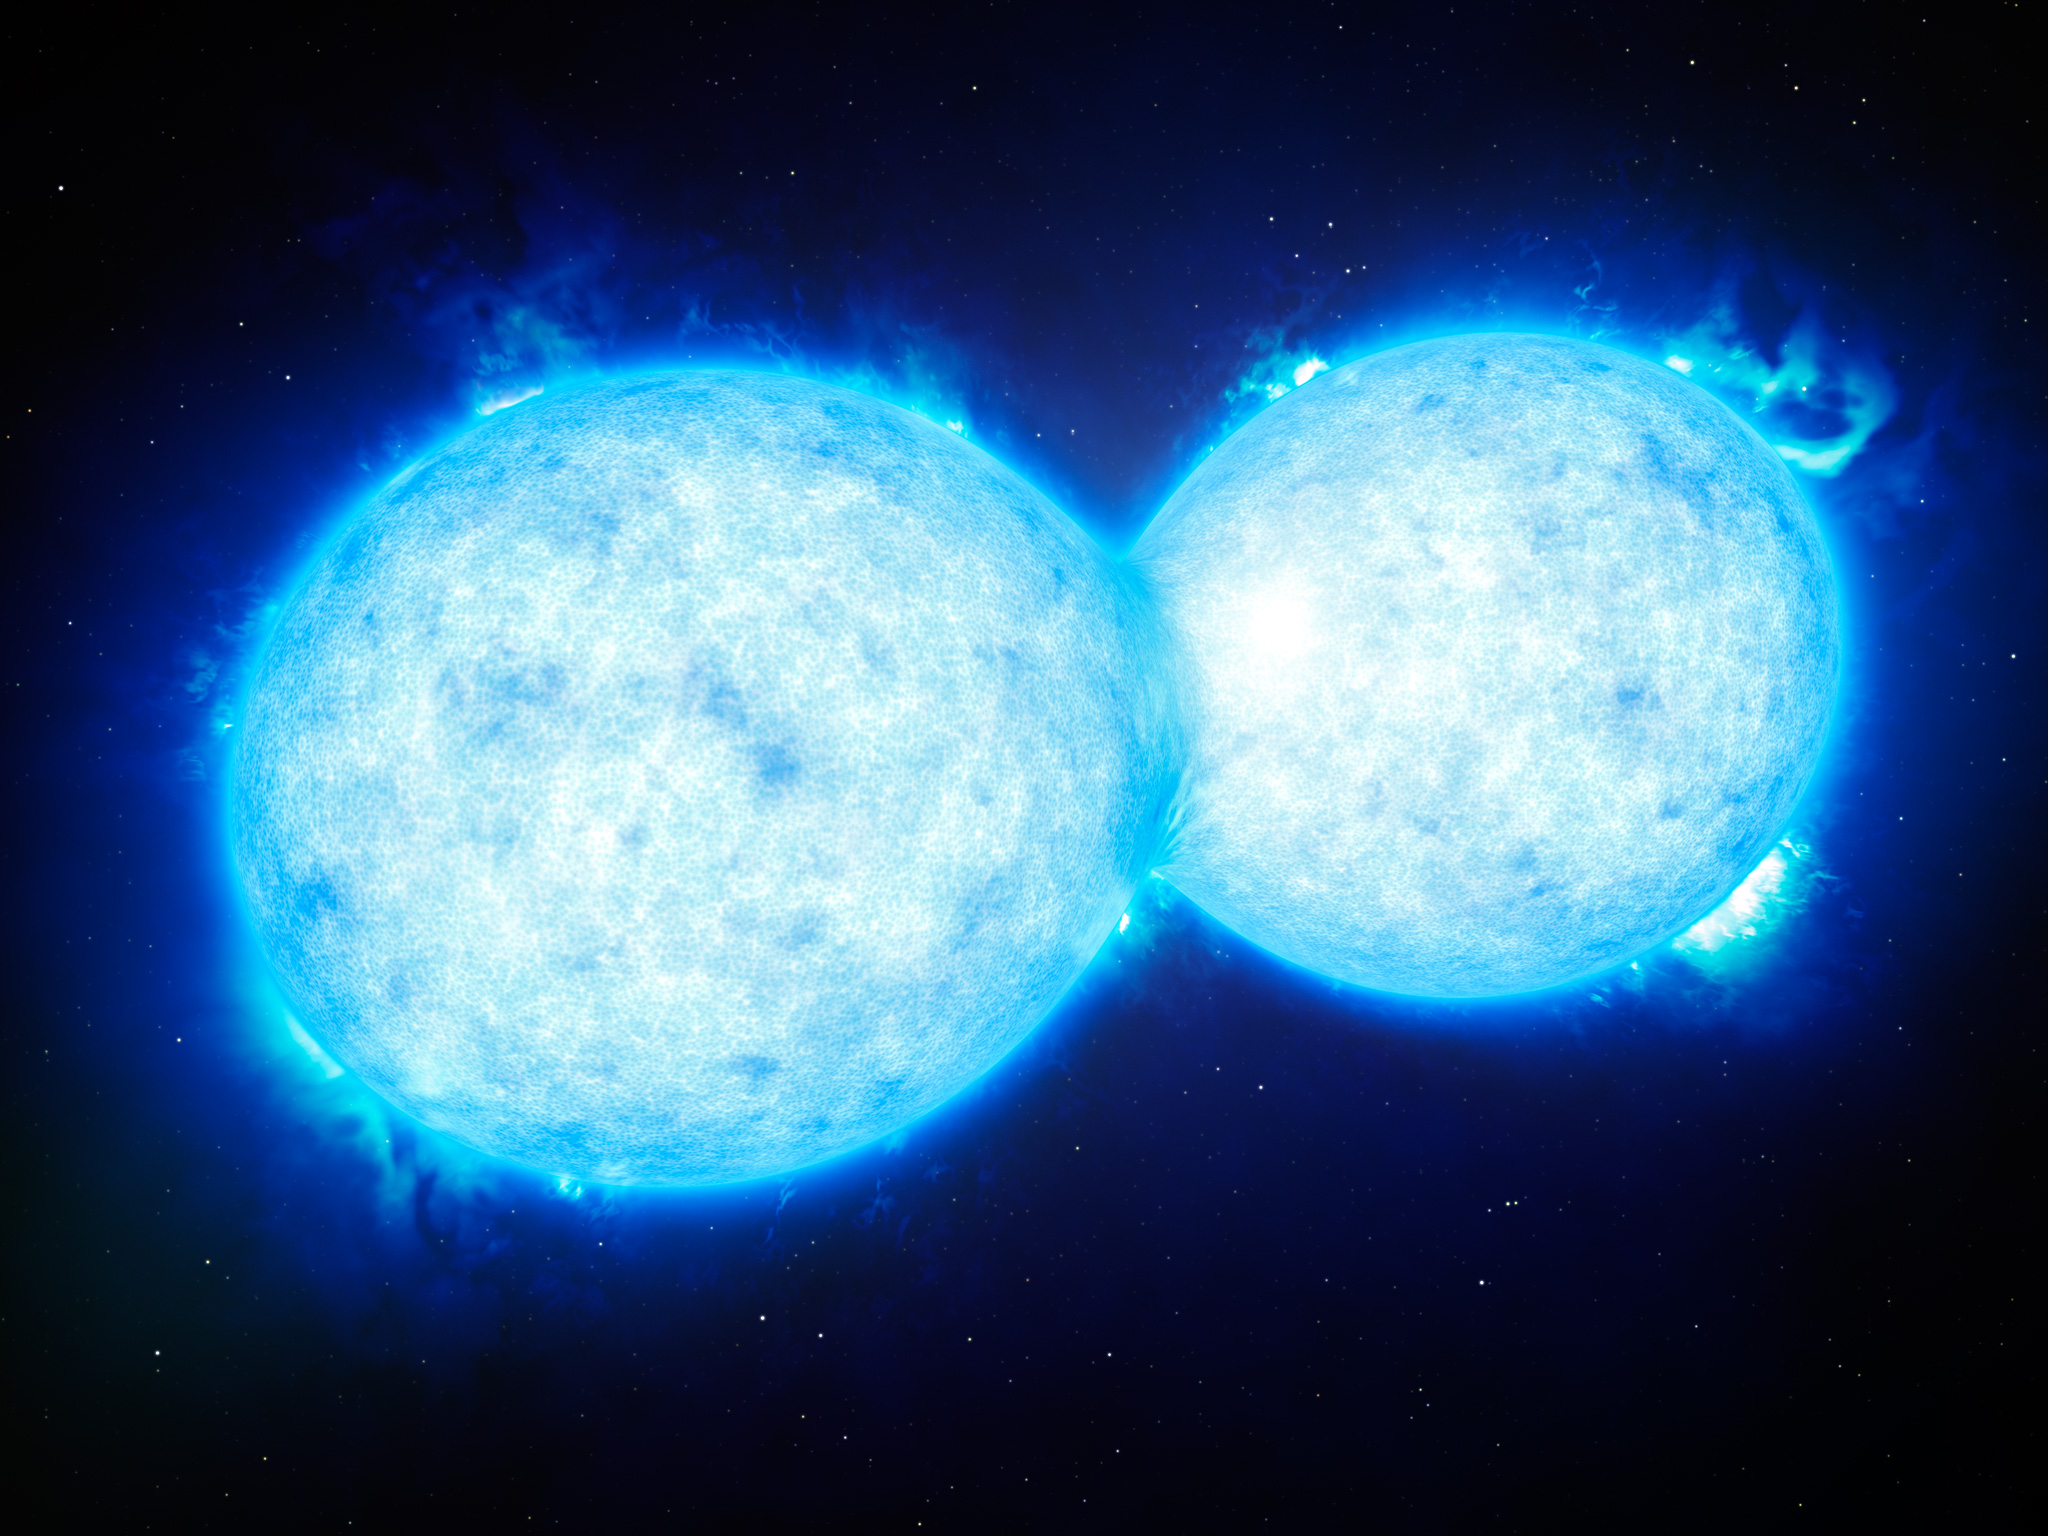 Cette vue d'artiste montre VFTS 532 – le système d'étoiles doubles le plus chaud et le plus massif connu à ce jour, dont les composantes, situées à grande proximité l'une de l'autre, partagent du contenu matériel. Les deux étoiles de ce système extrême se situent à quelque 160.000 années-lumière de la Terre dans le Grand Nuage de Magellan. Cet étrange système s'achemine certainement vers une fin dramatique : la formation d'une unique étoile géante ou d'un futur trou noir binaire. © ESO/L. Calçada